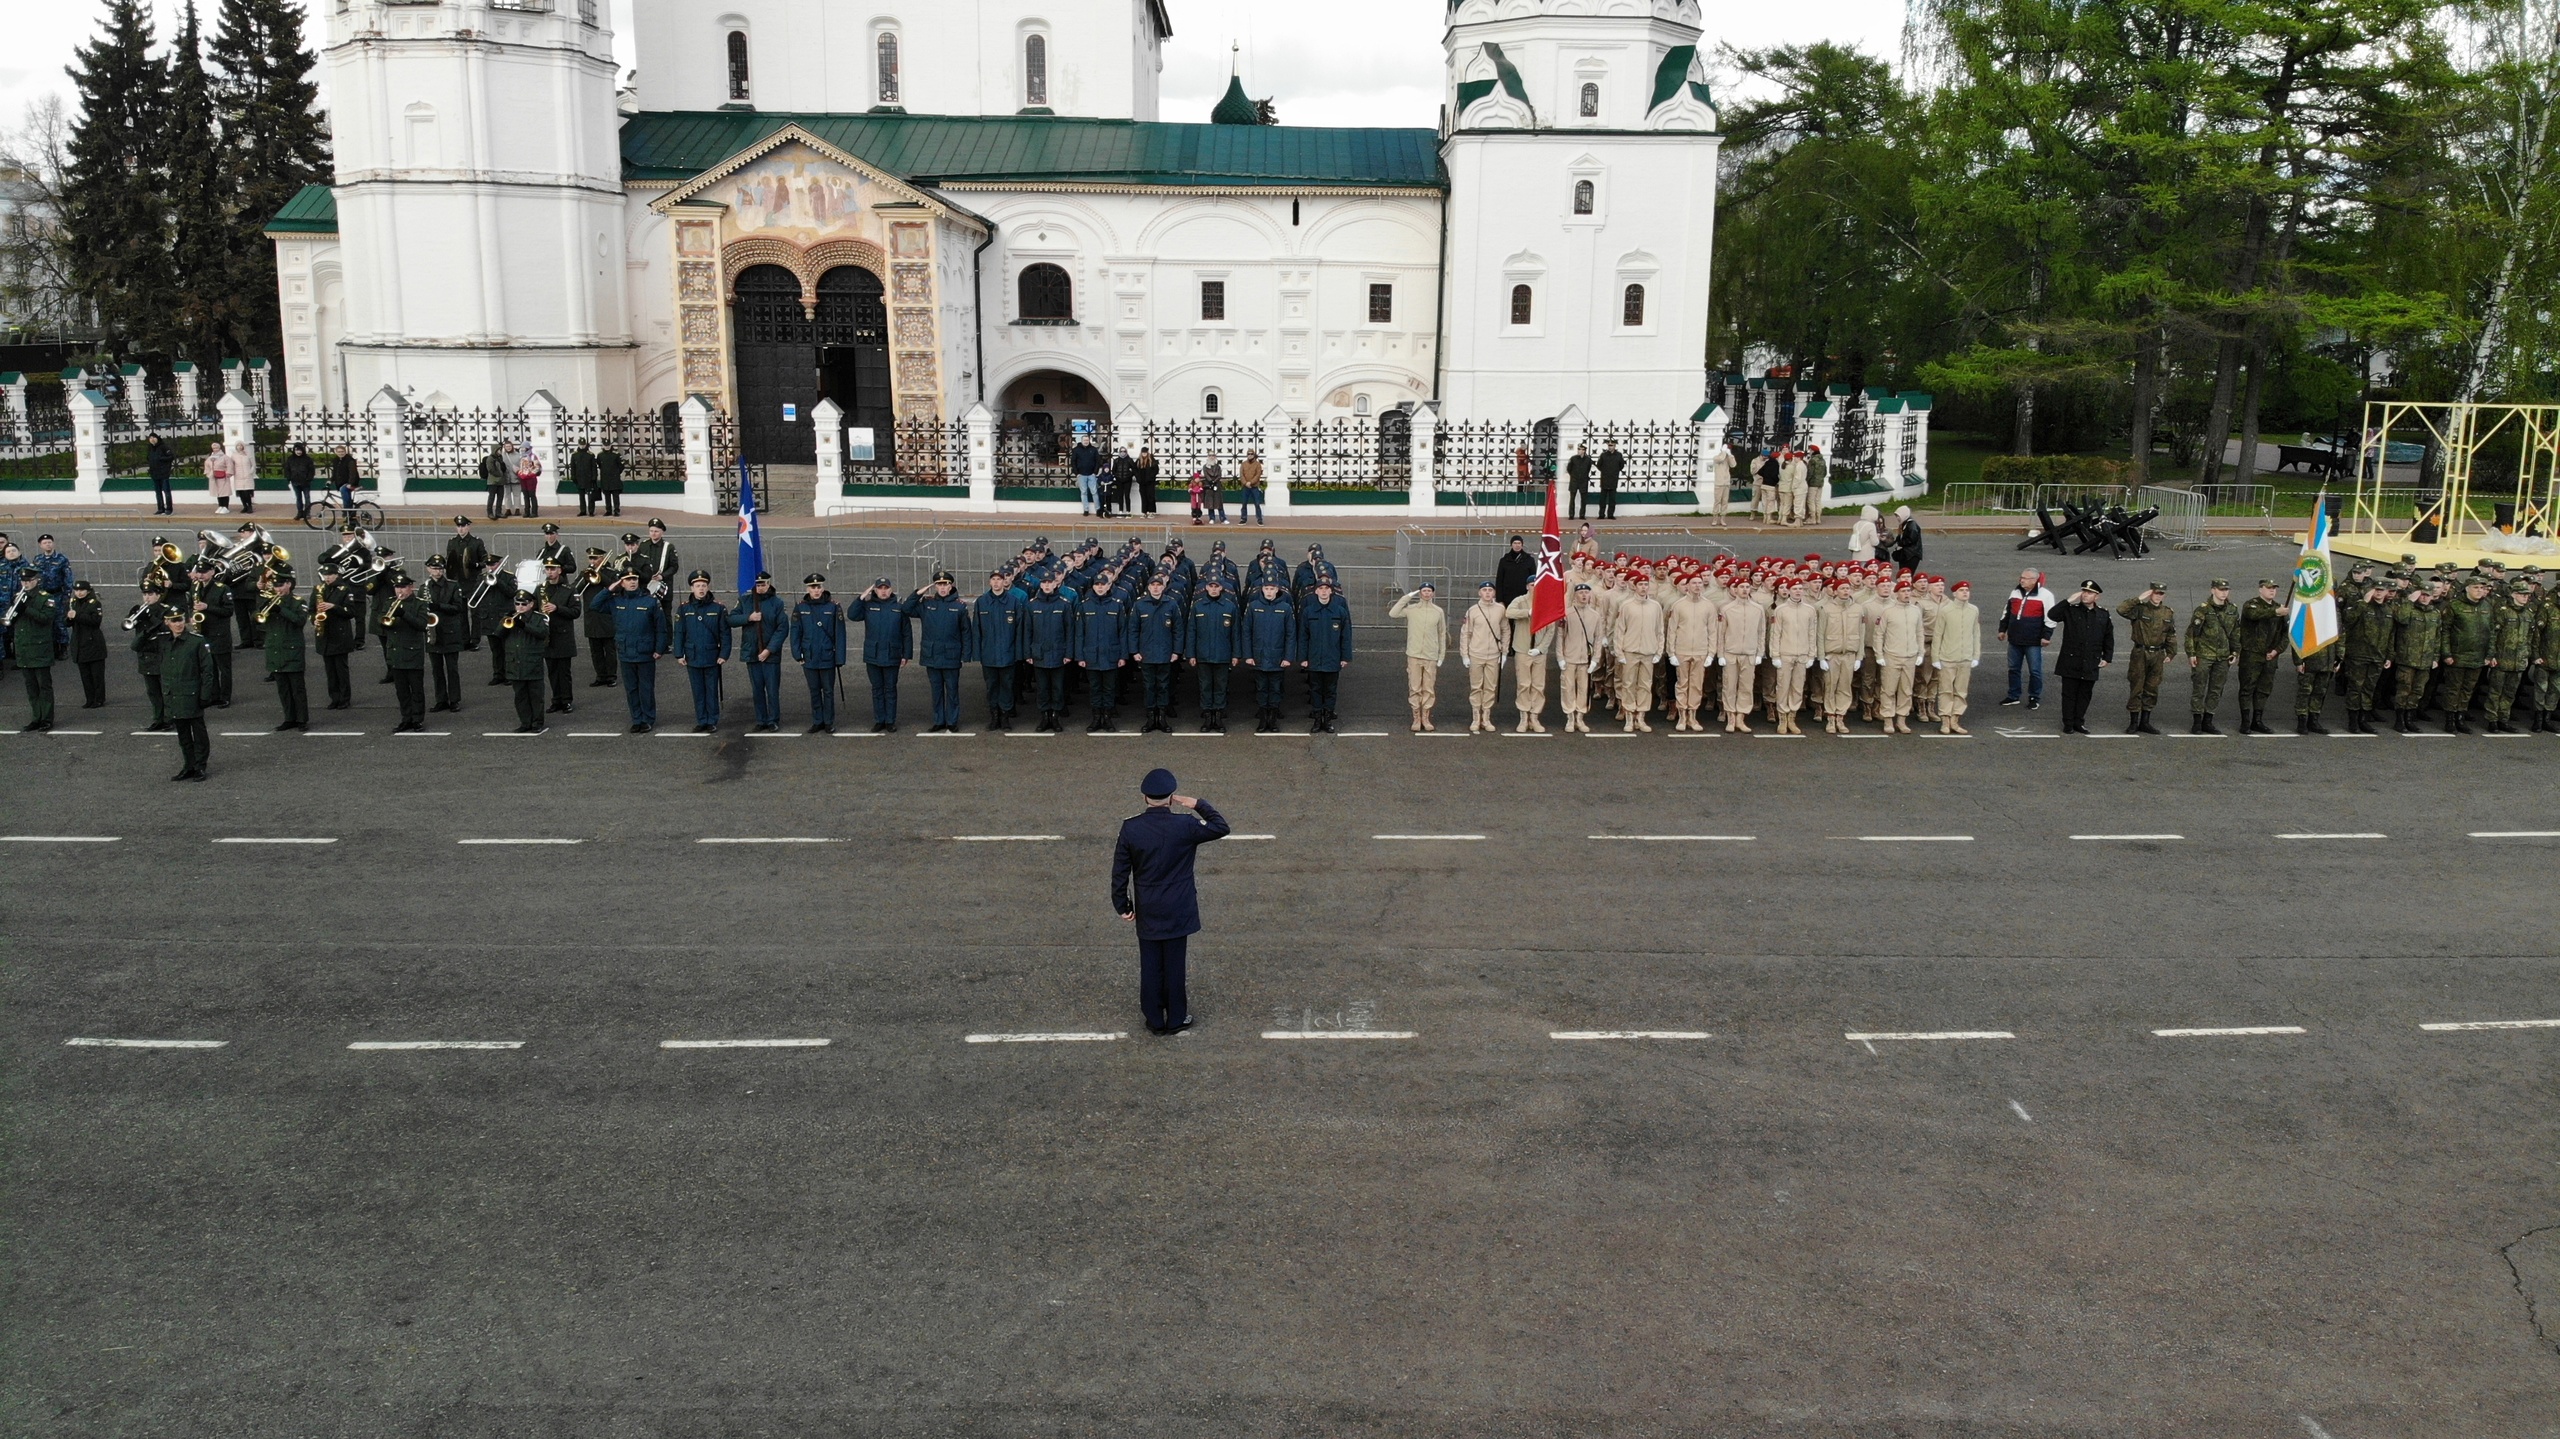 Как изменится формат праздничного парада в День Победы в Ярославле, сообщил Михаил Евраев